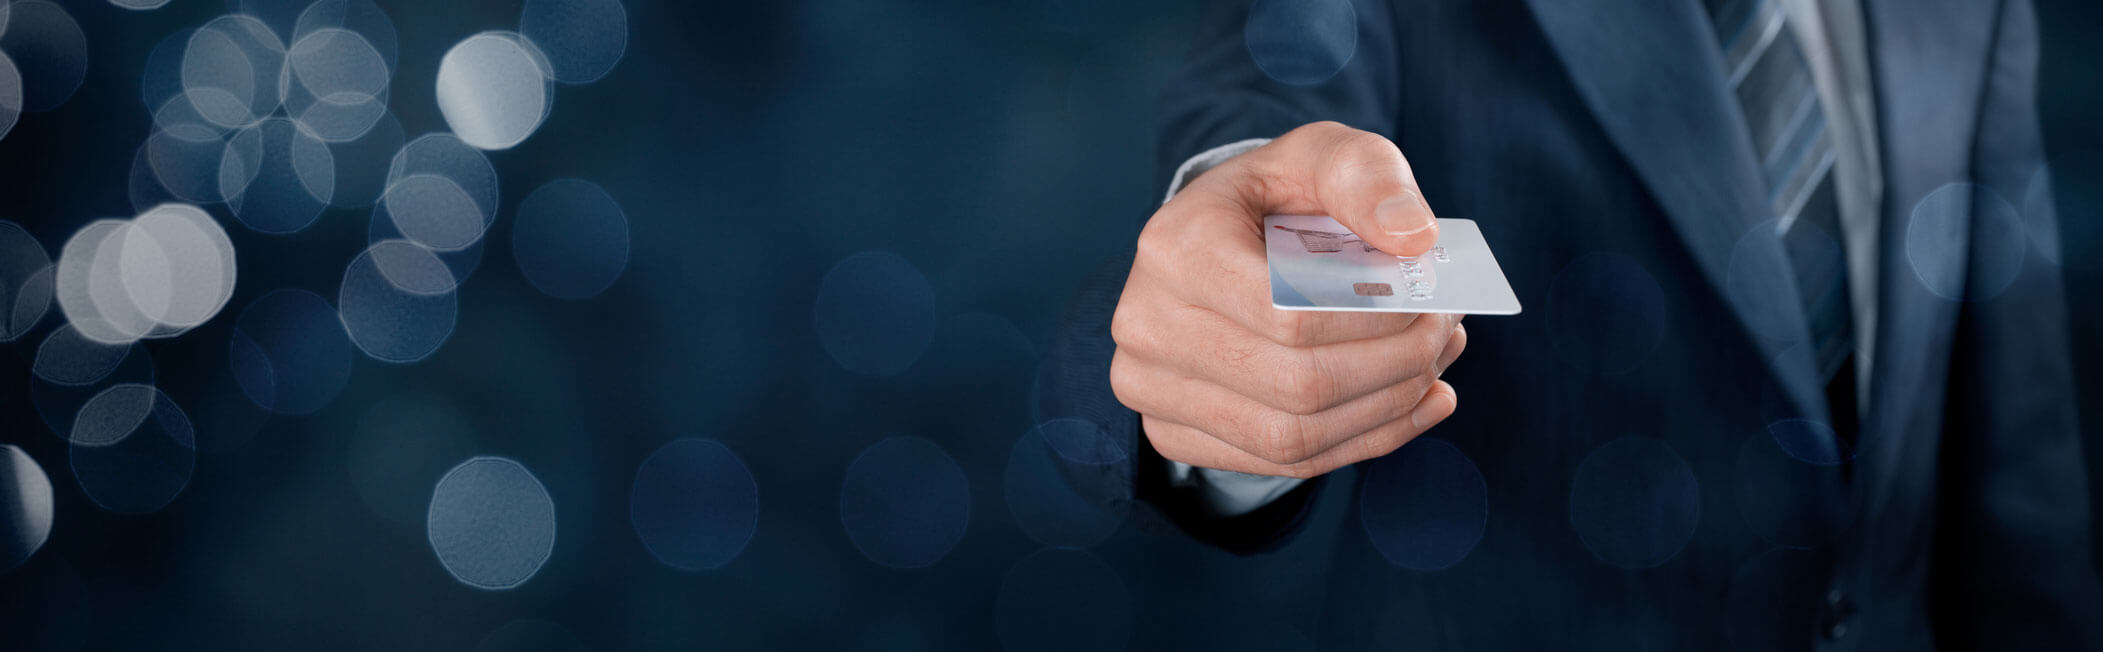 Kartenzahlung kontaktlos: So geht’s mit Girocard und Kreditkarte